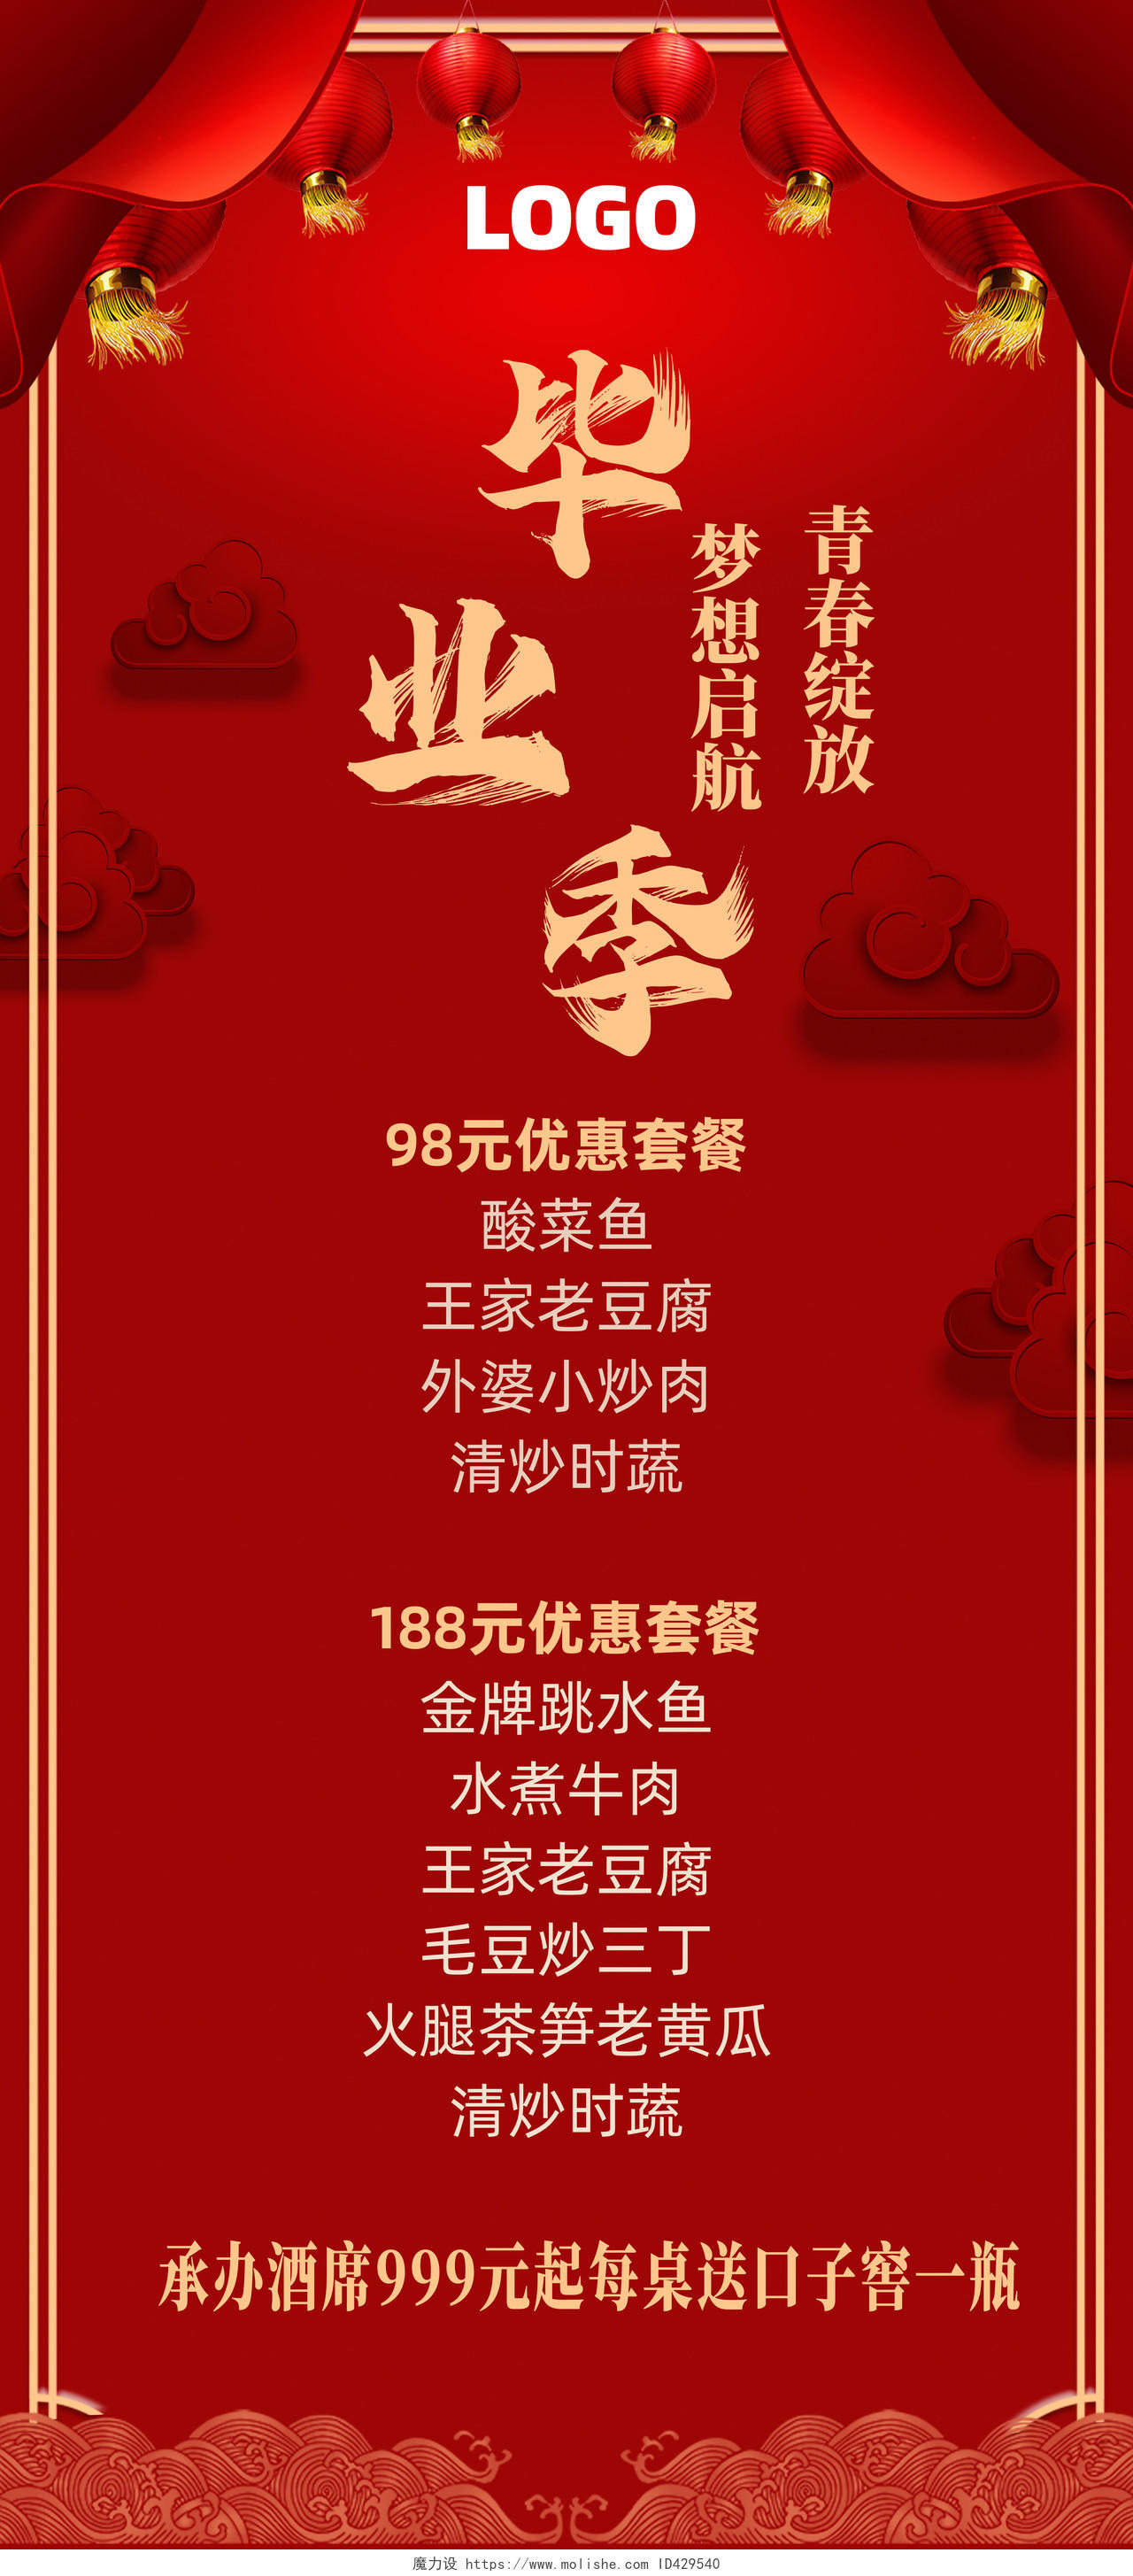 红色简约喜庆毕业季餐厅宣传毕业季展架